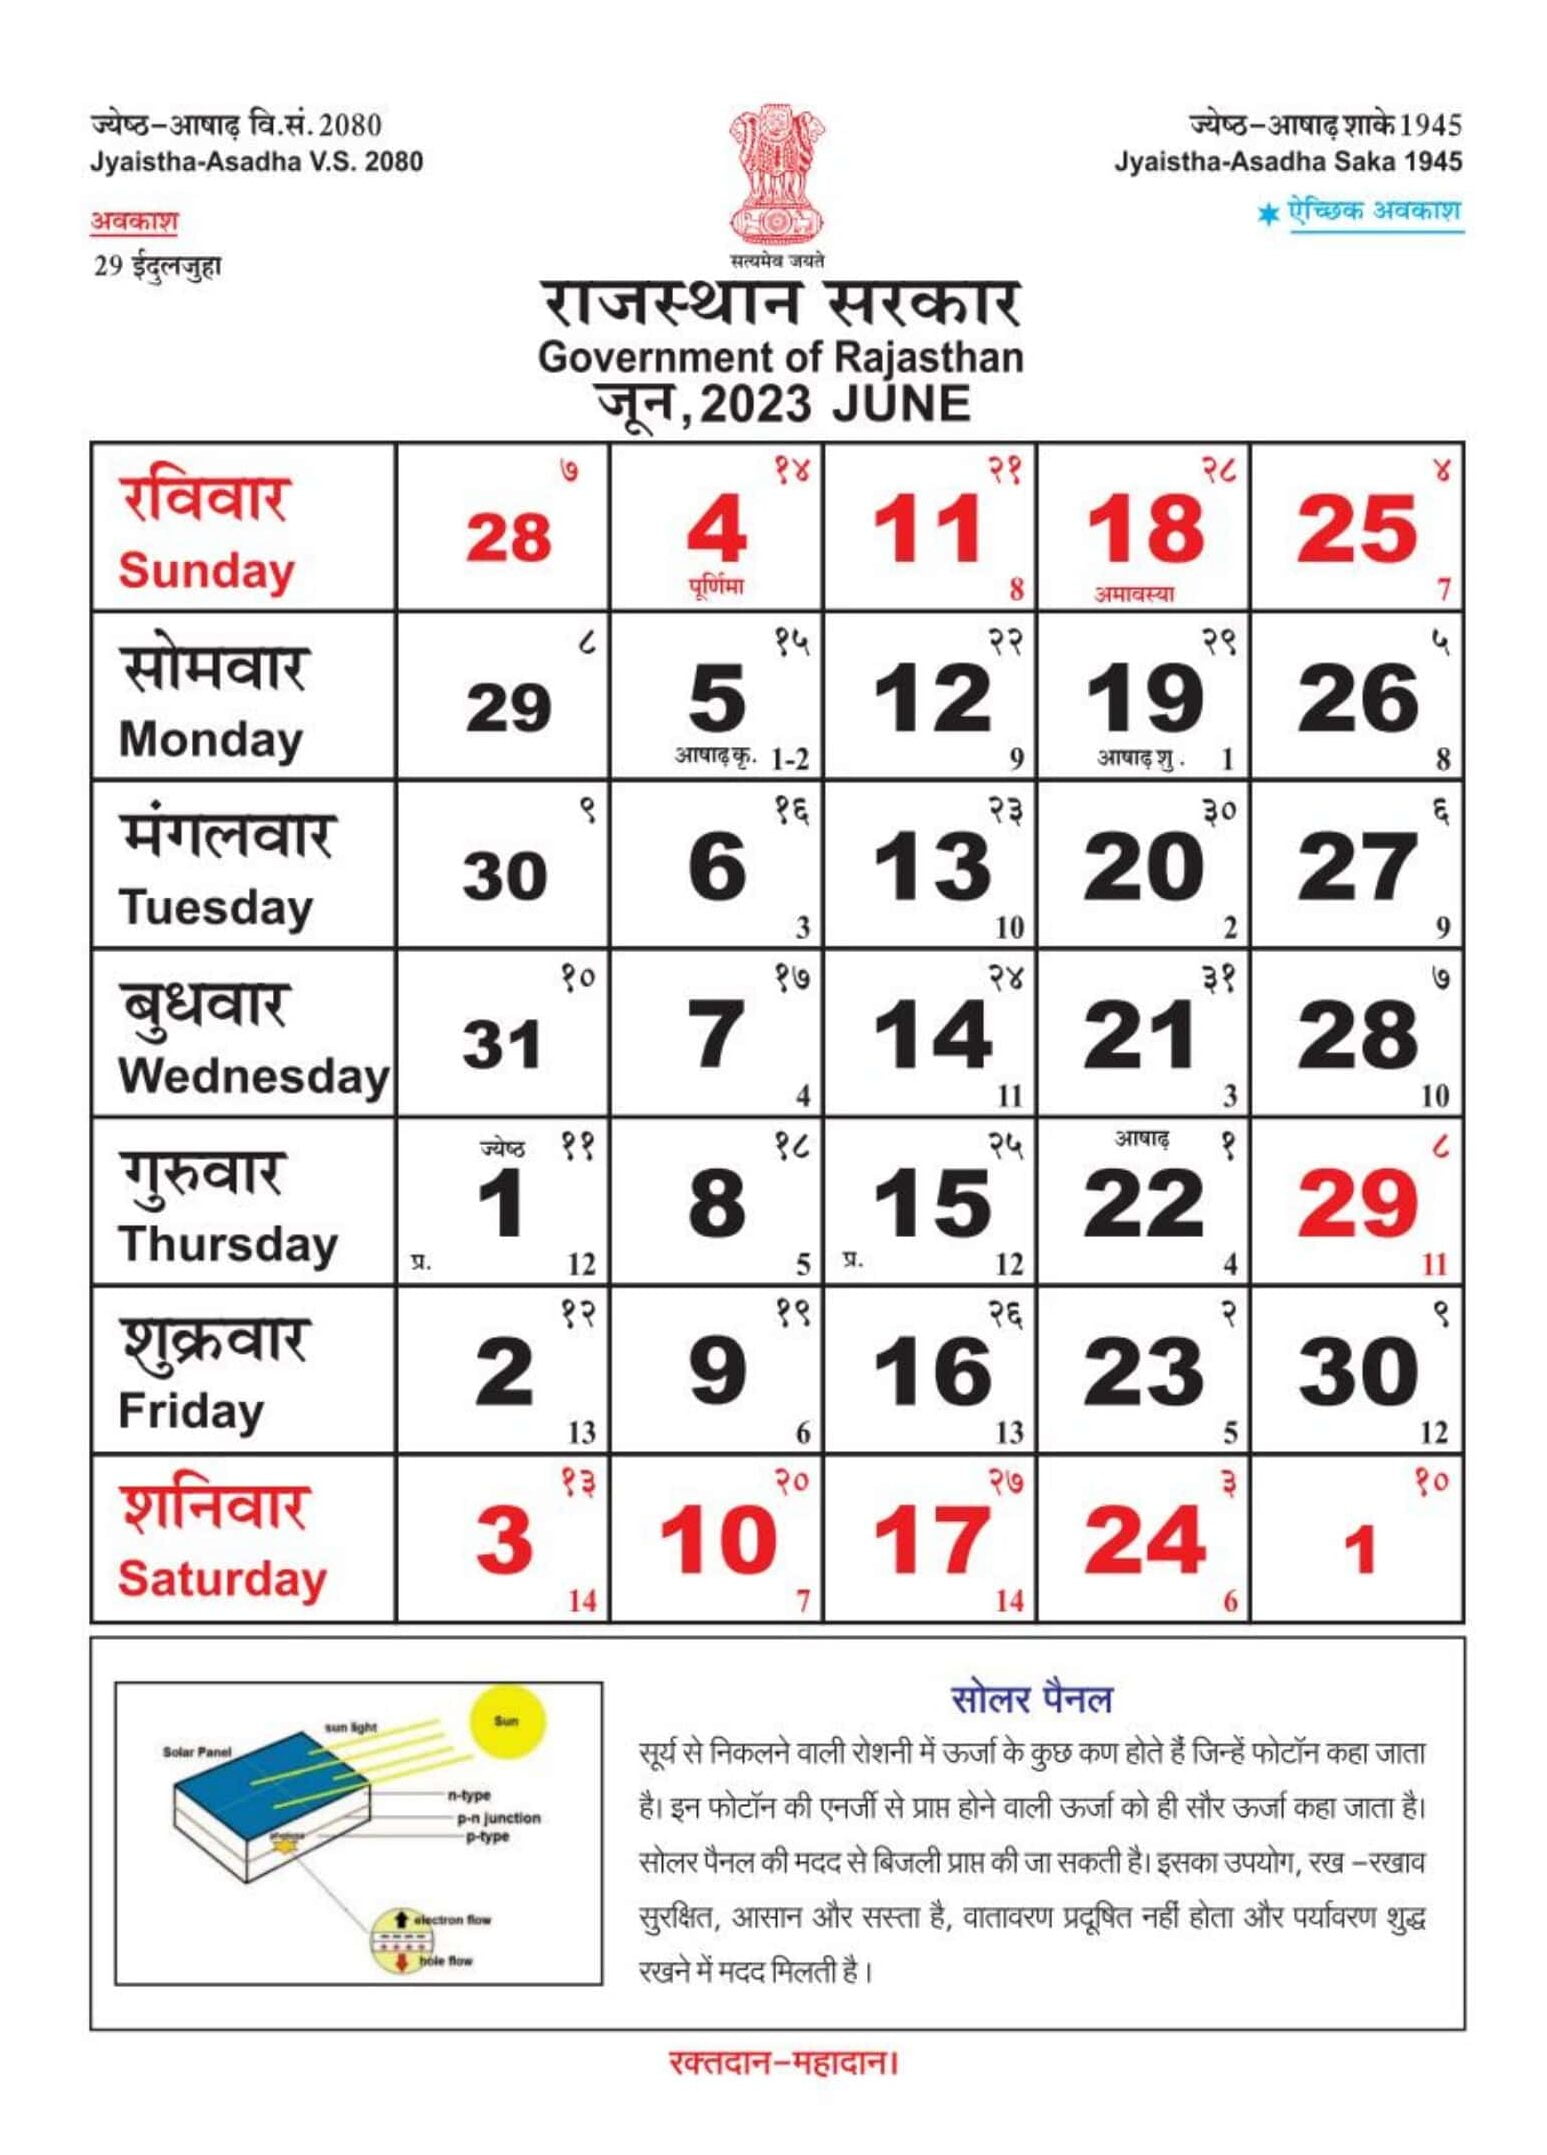 Rajasthan govt calendar Jun 2023 